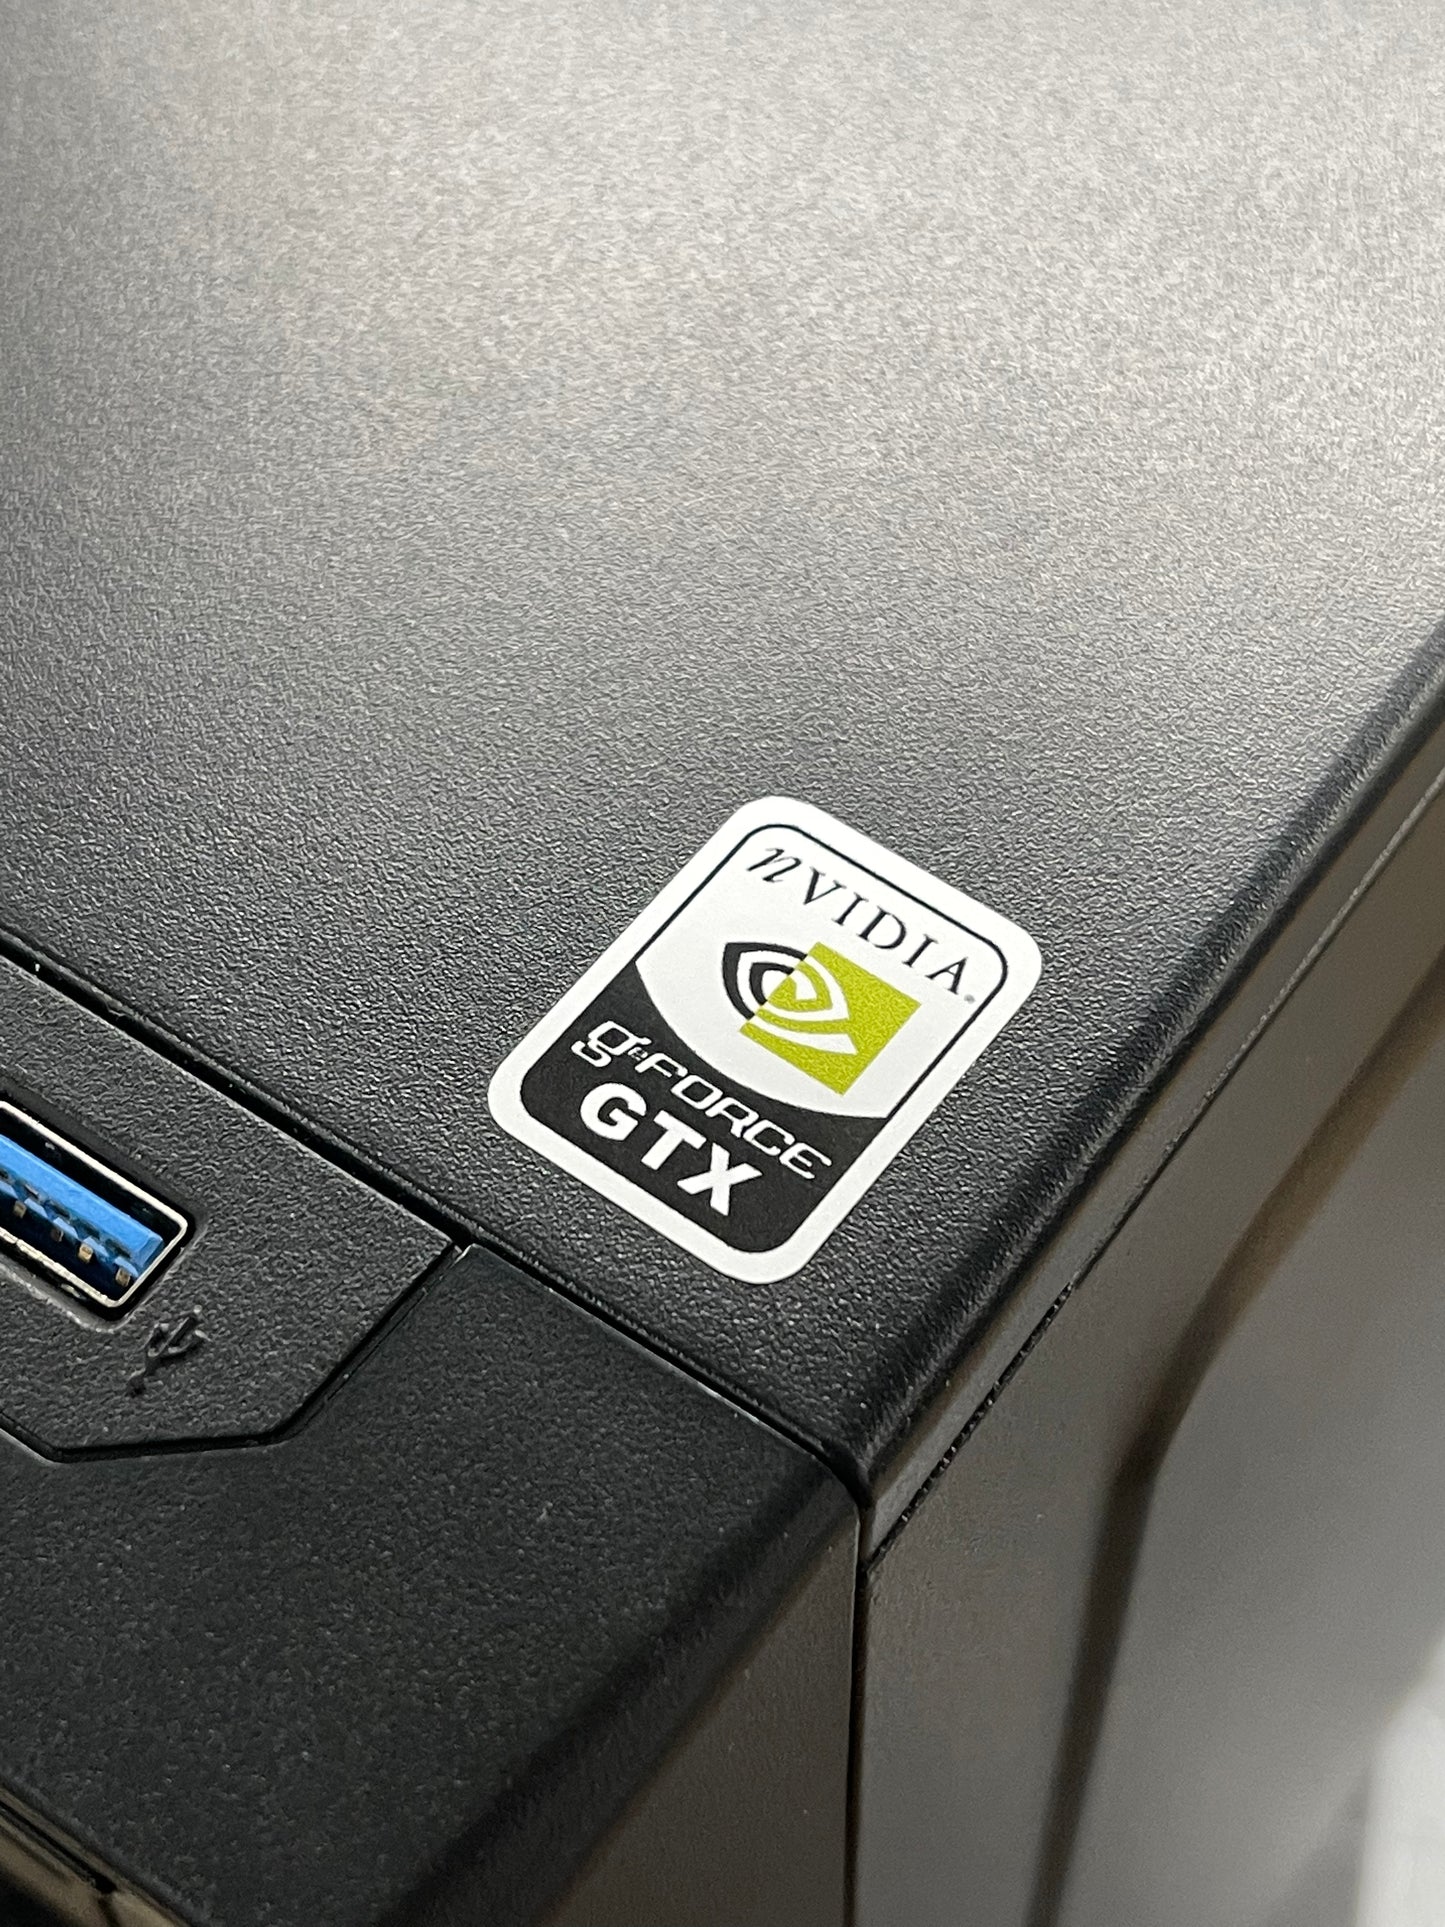 GeForce GTX Case Badge Sticker - White